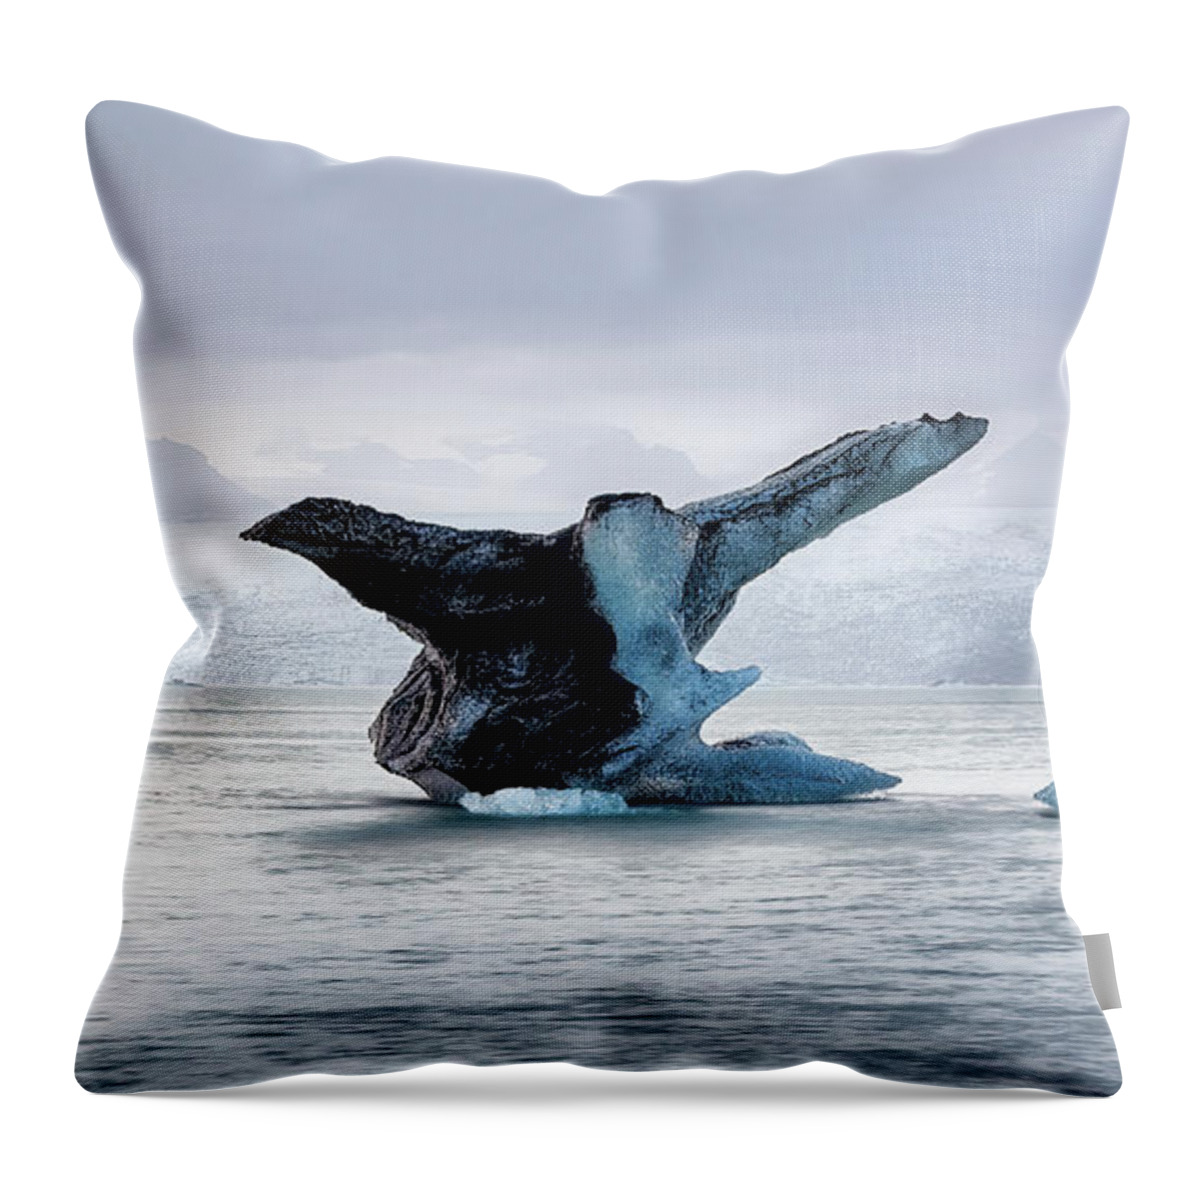 Breiðamerkurjökull Throw Pillow featuring the photograph Icebird by Dee Potter